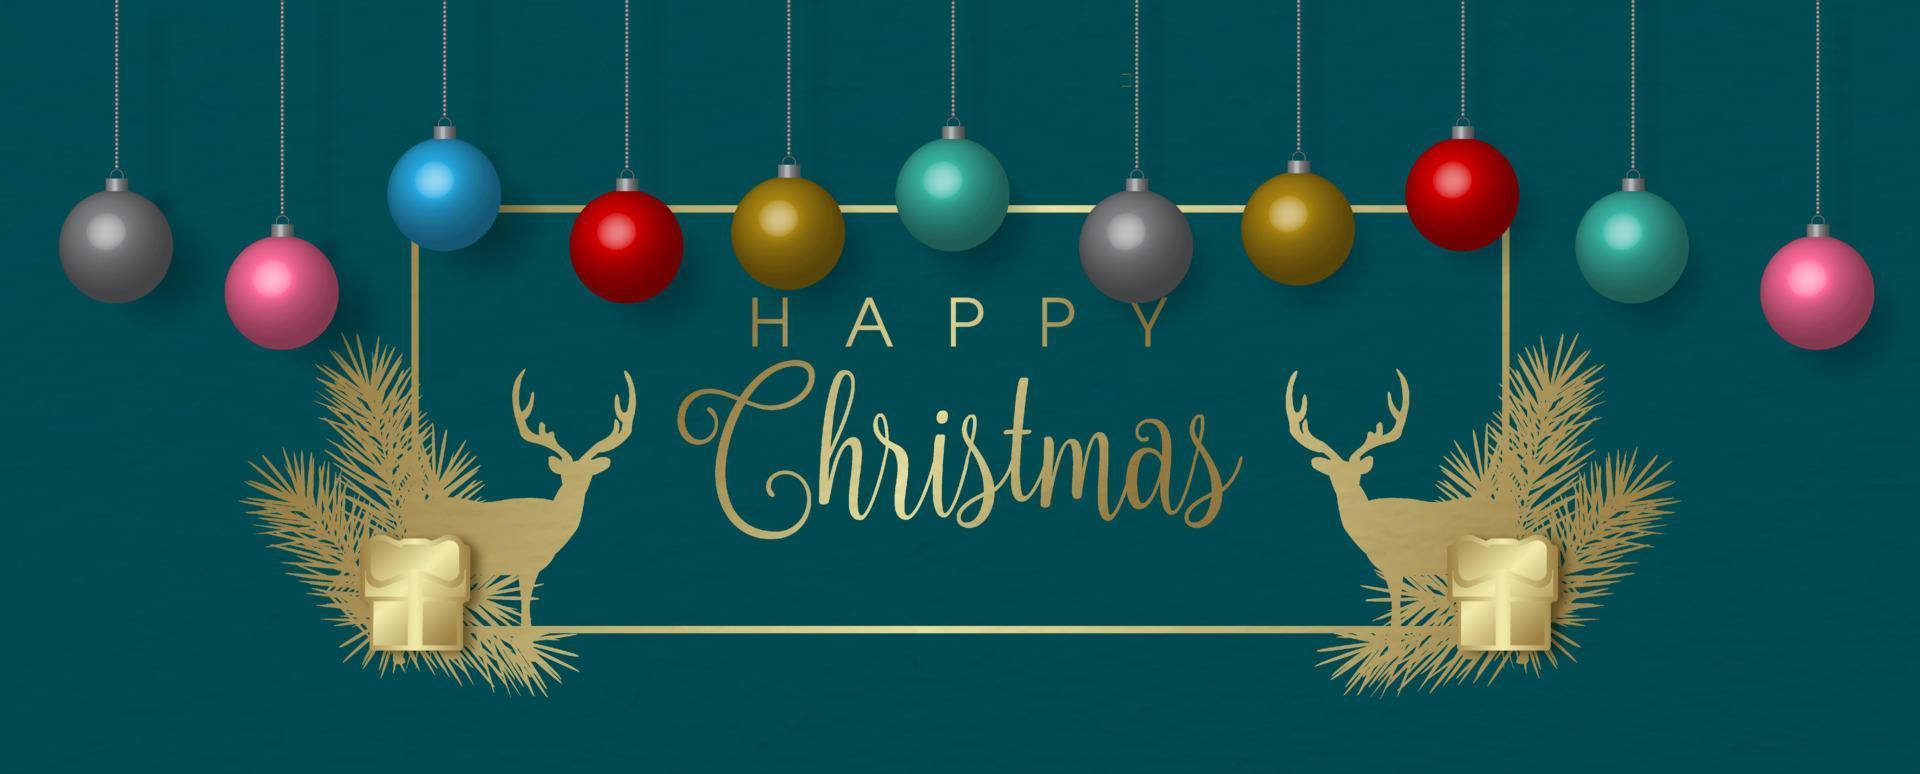 bolas de natal coloridas em estilo 3d penduradas em moldura de natal dourada e decoração com letras de feliz natal isoladas em fundo verde. vetor